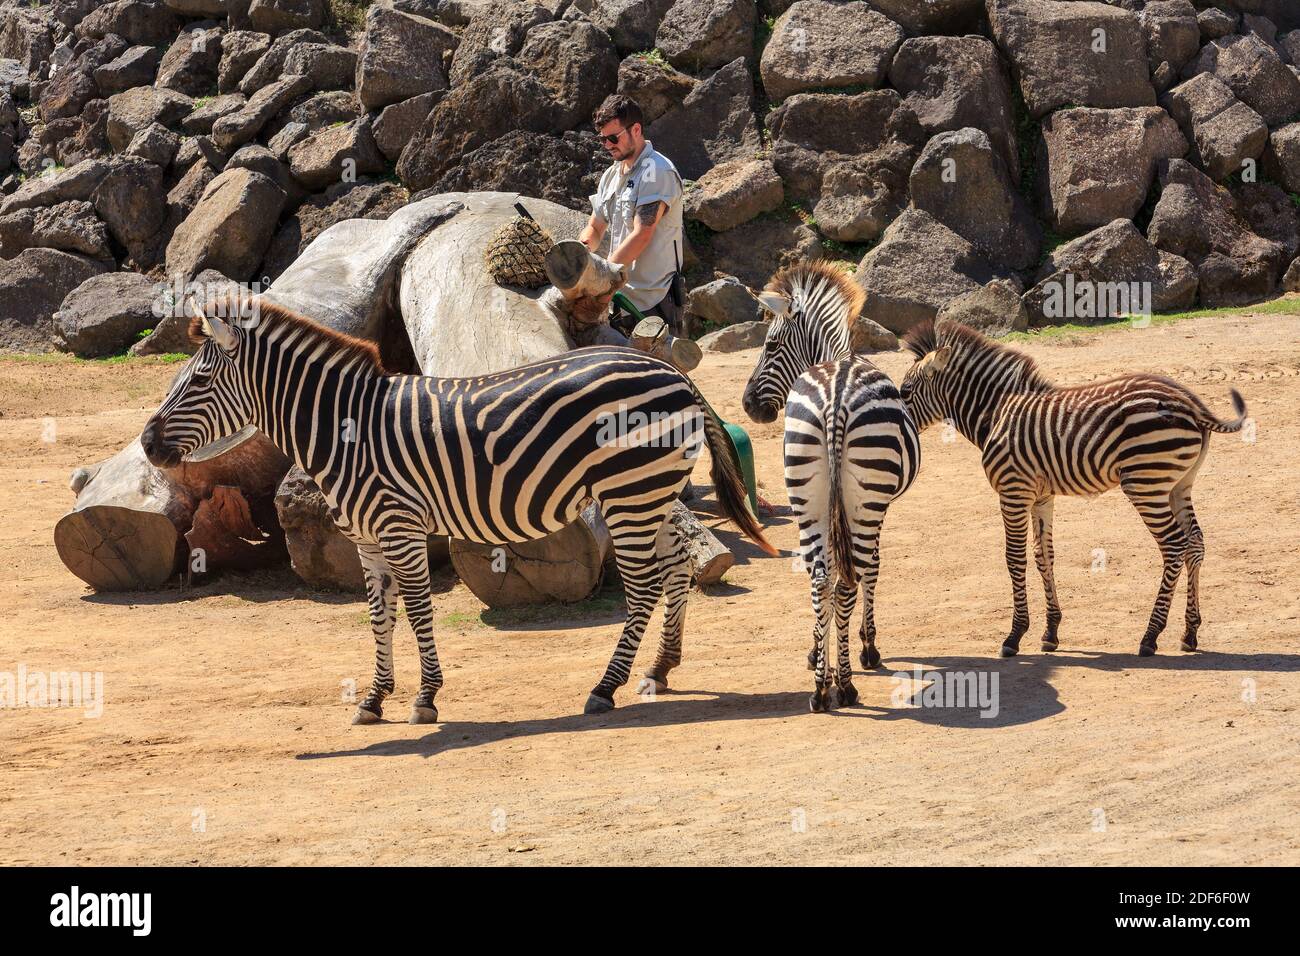 Ein Zookeeper in einem Gehege mit einer Familie von Zebras. Auckland Zoo, Auckland, Neuseeland Stockfoto